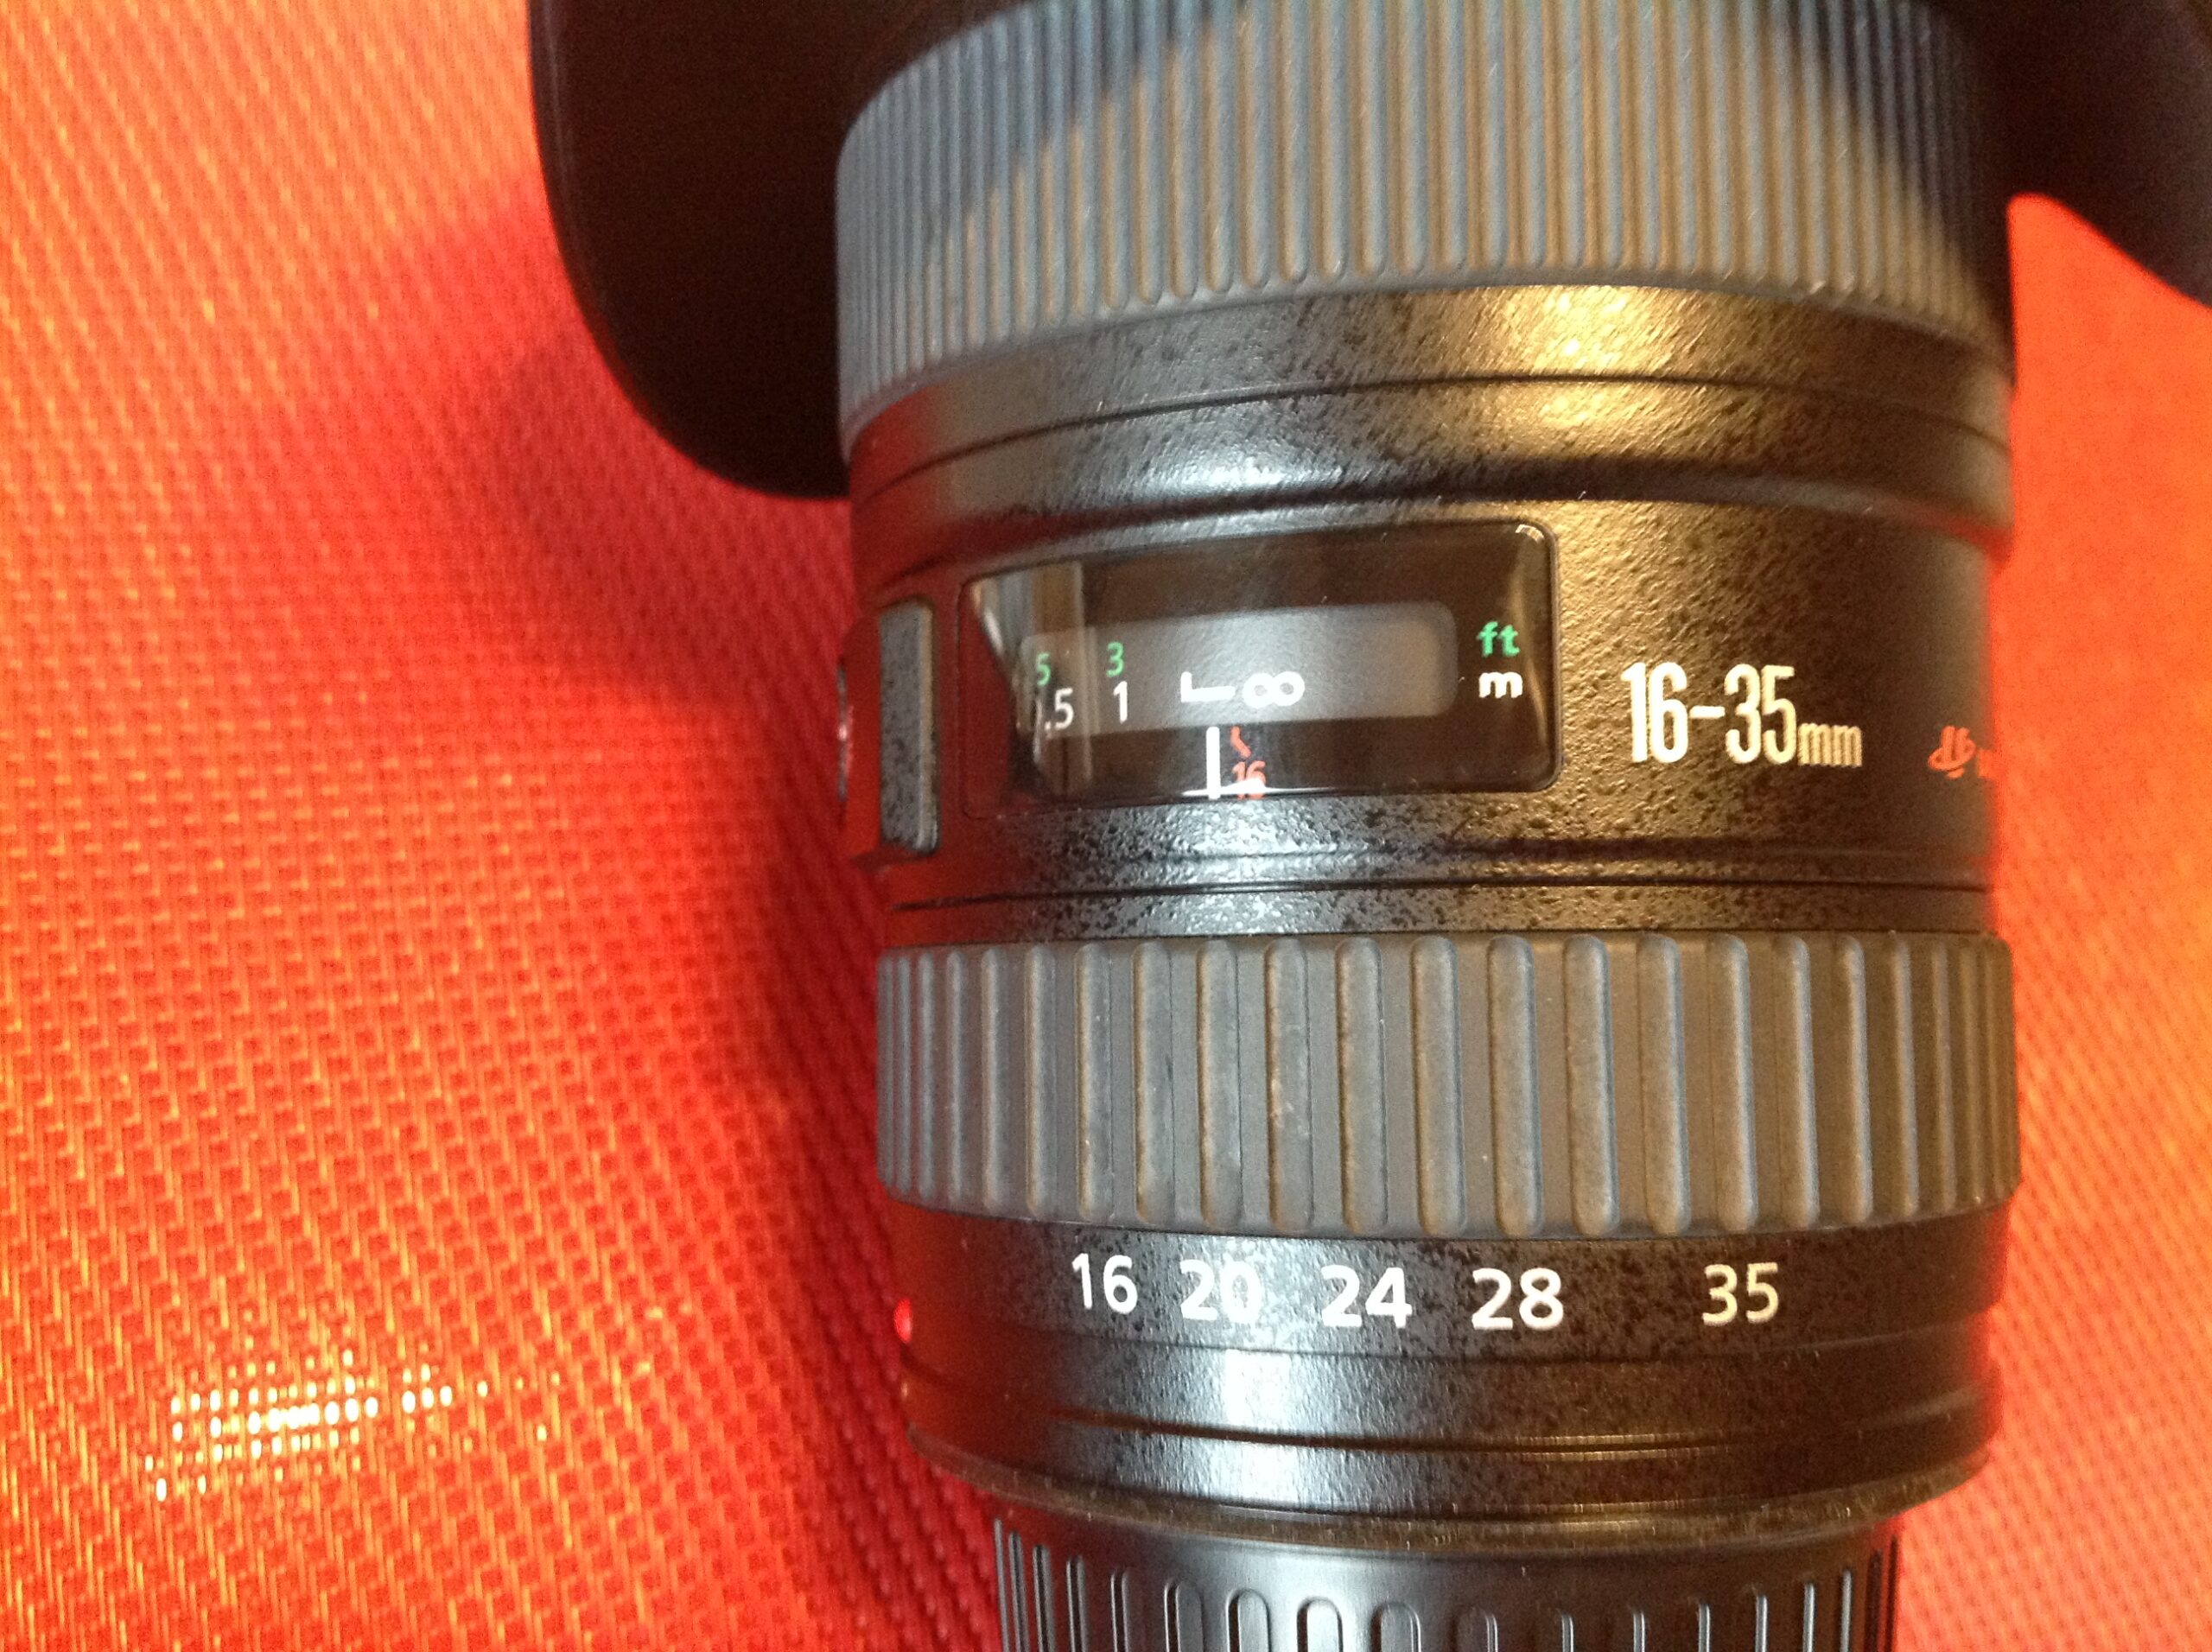 Canon Ultrasonic EF 16-35 mm f/2.8 L II USM Makro Objektiv